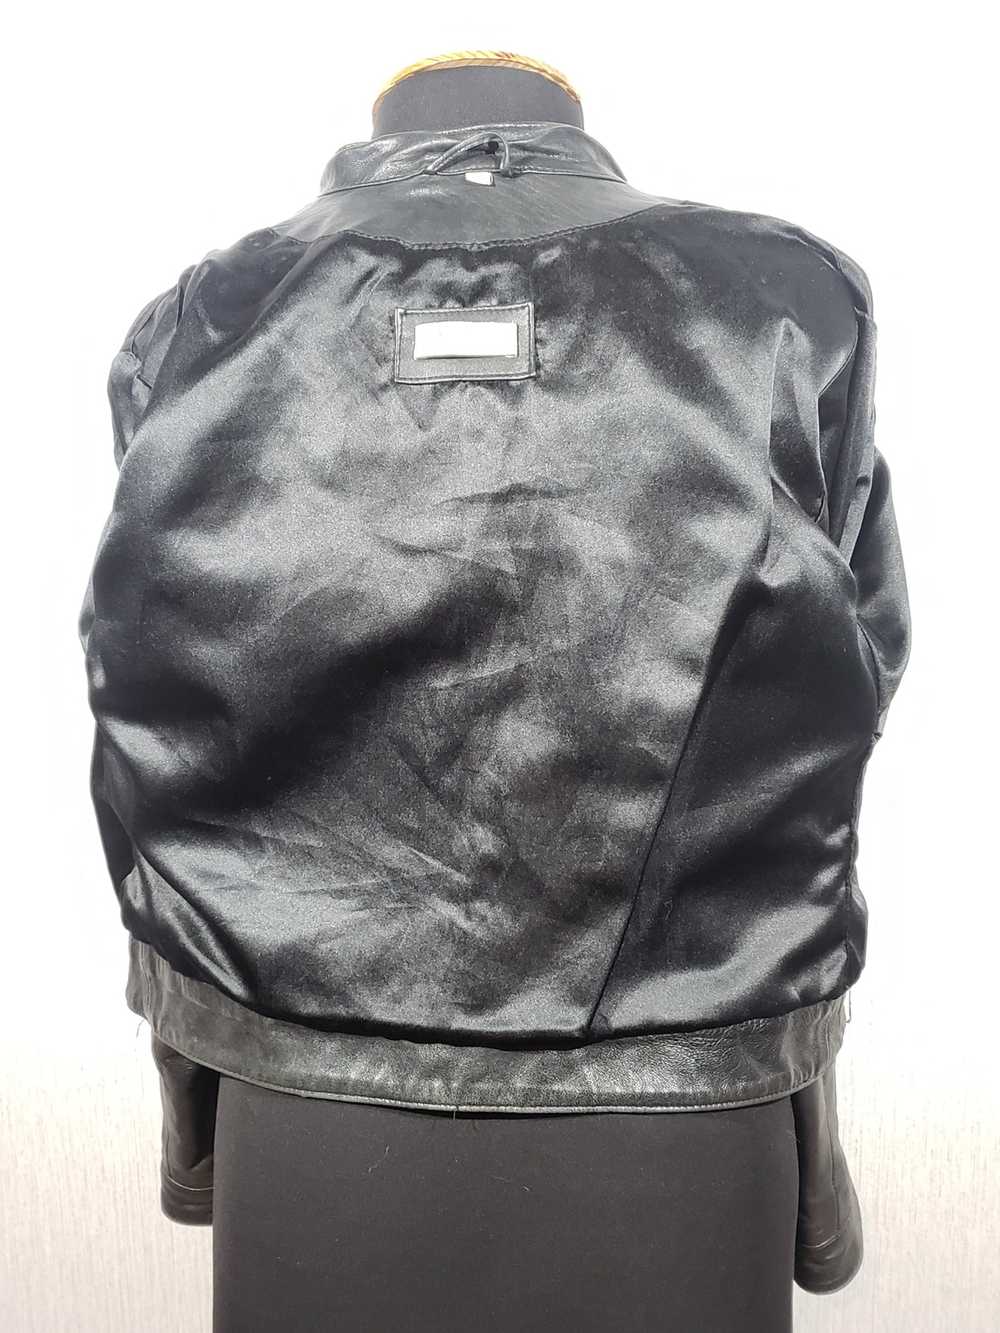 Designer × Leather Jacket Black women's sports ja… - image 5